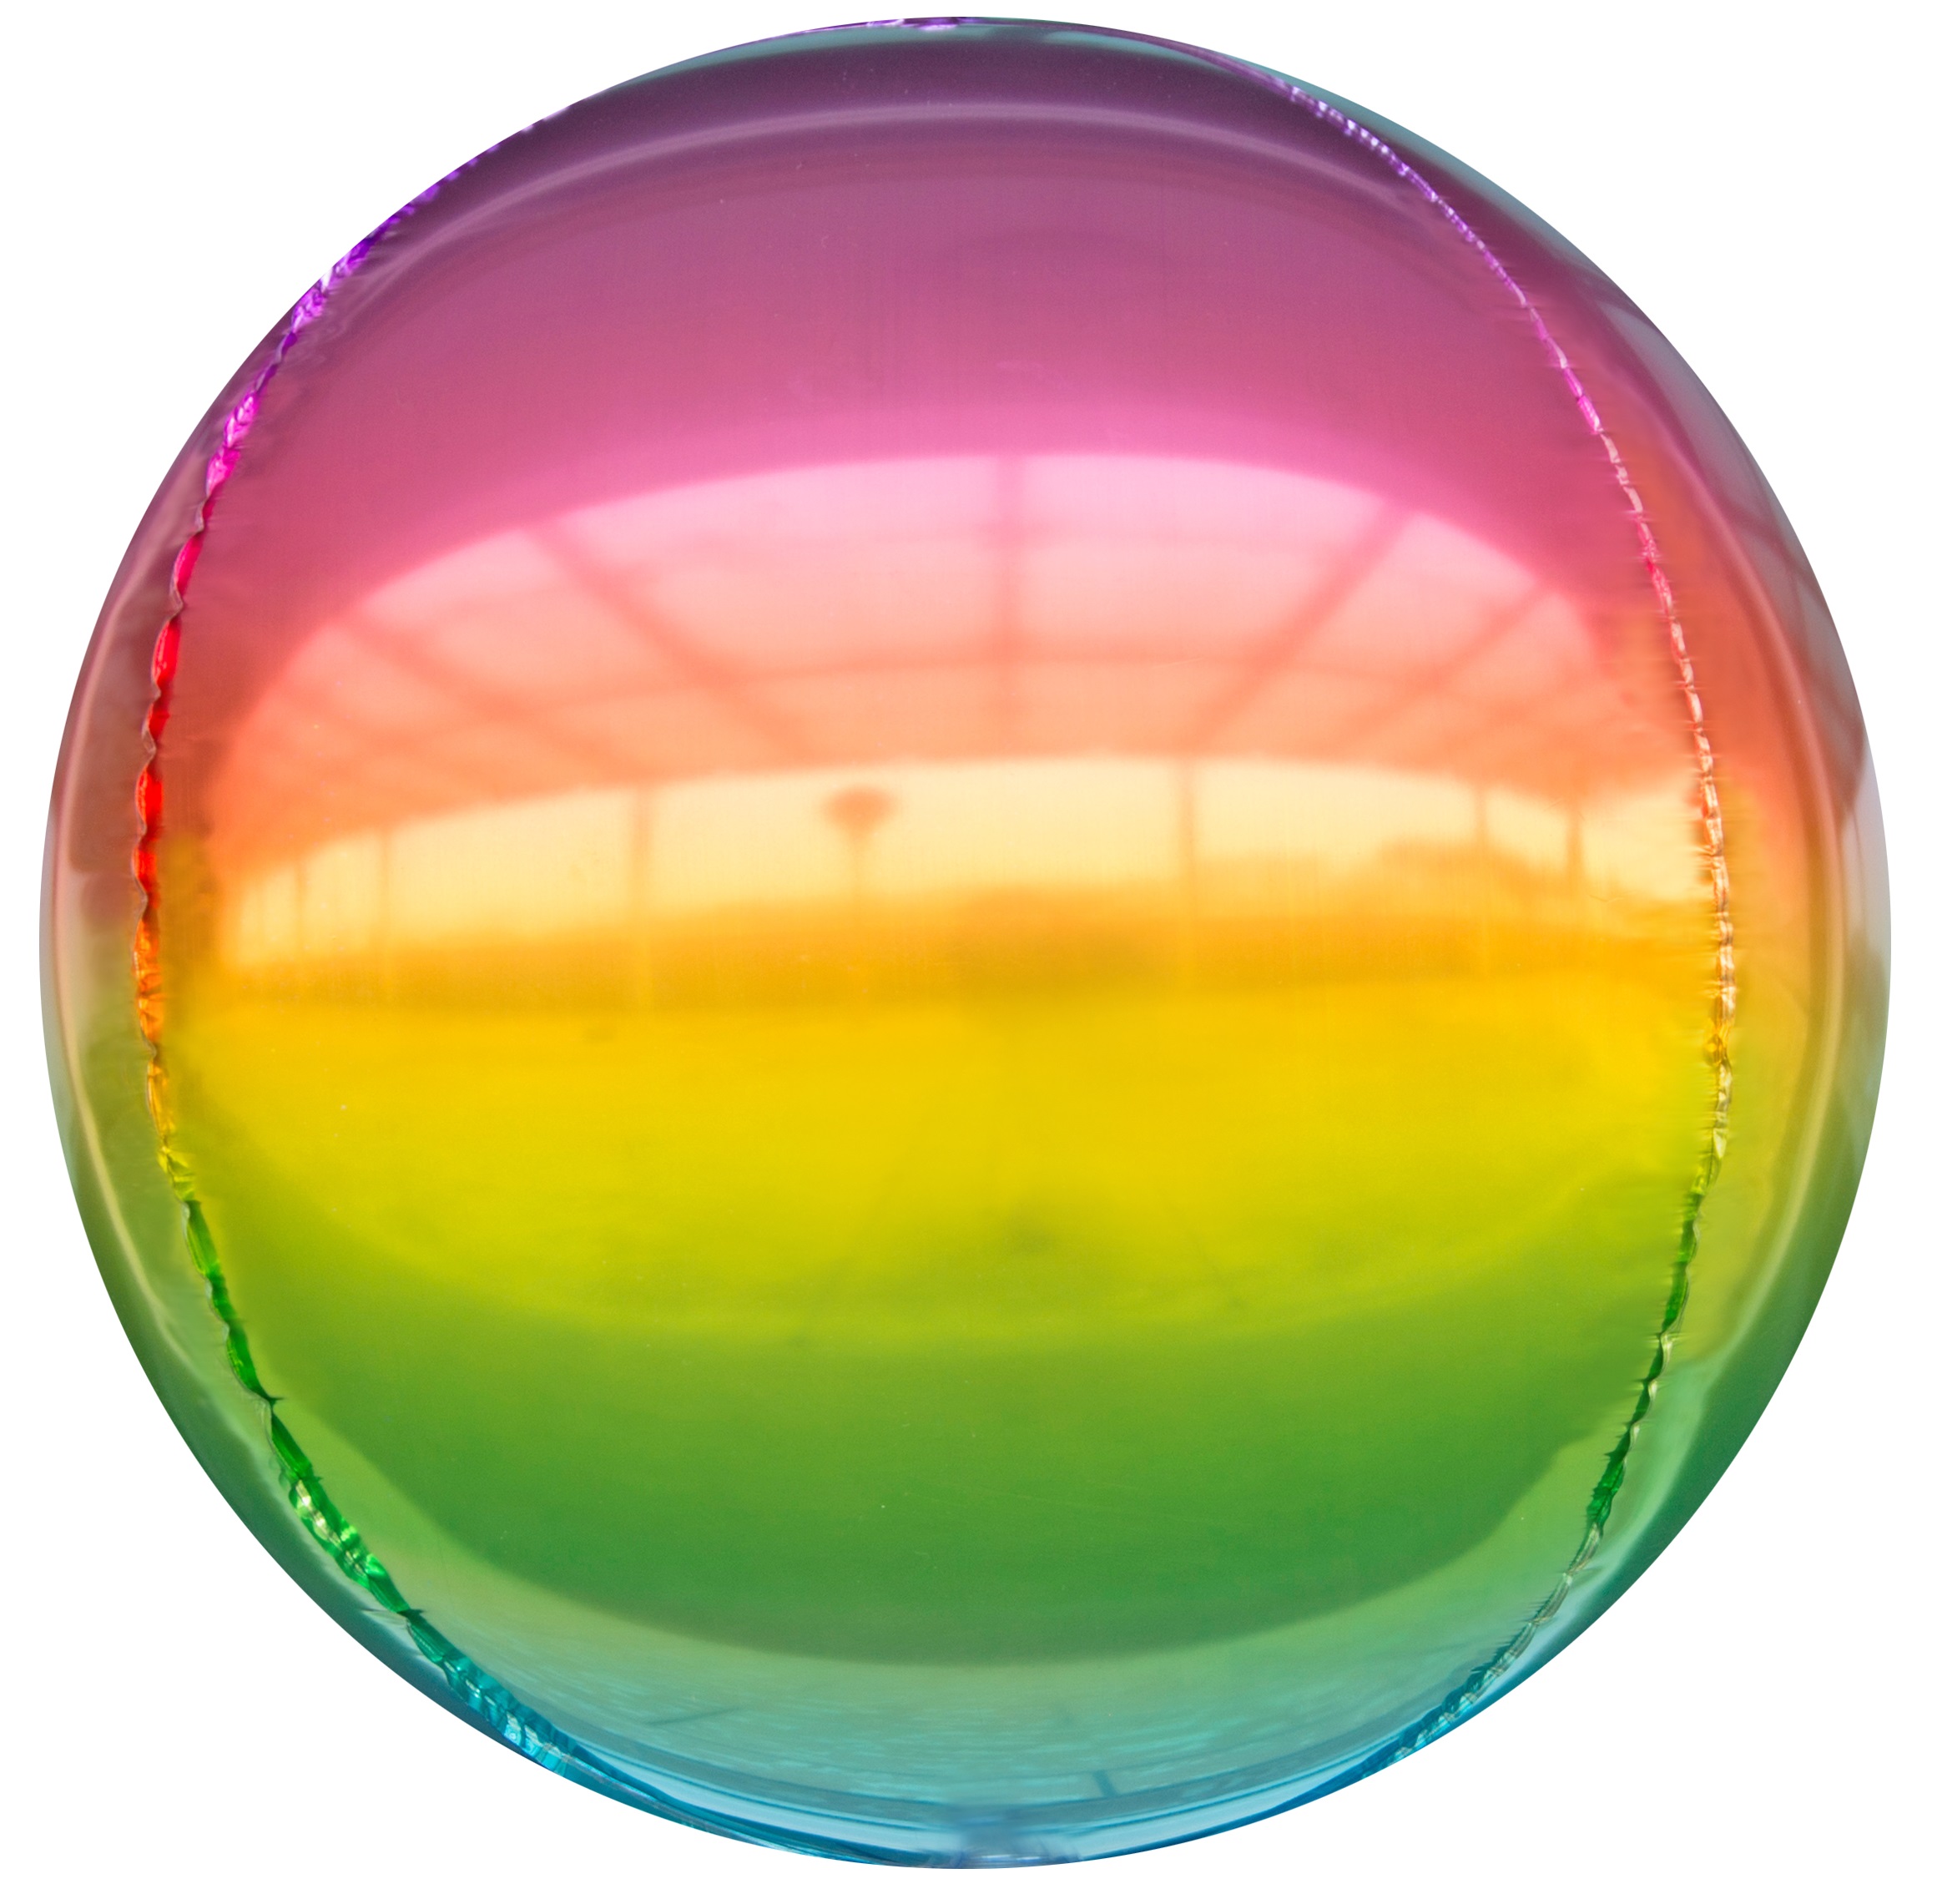 Цветной шар. Фольгированная сфера градиент. Шар (20"/51 см) сфера 3d серебро голография 1 шт. Цветные шары. Разноцветный шар.